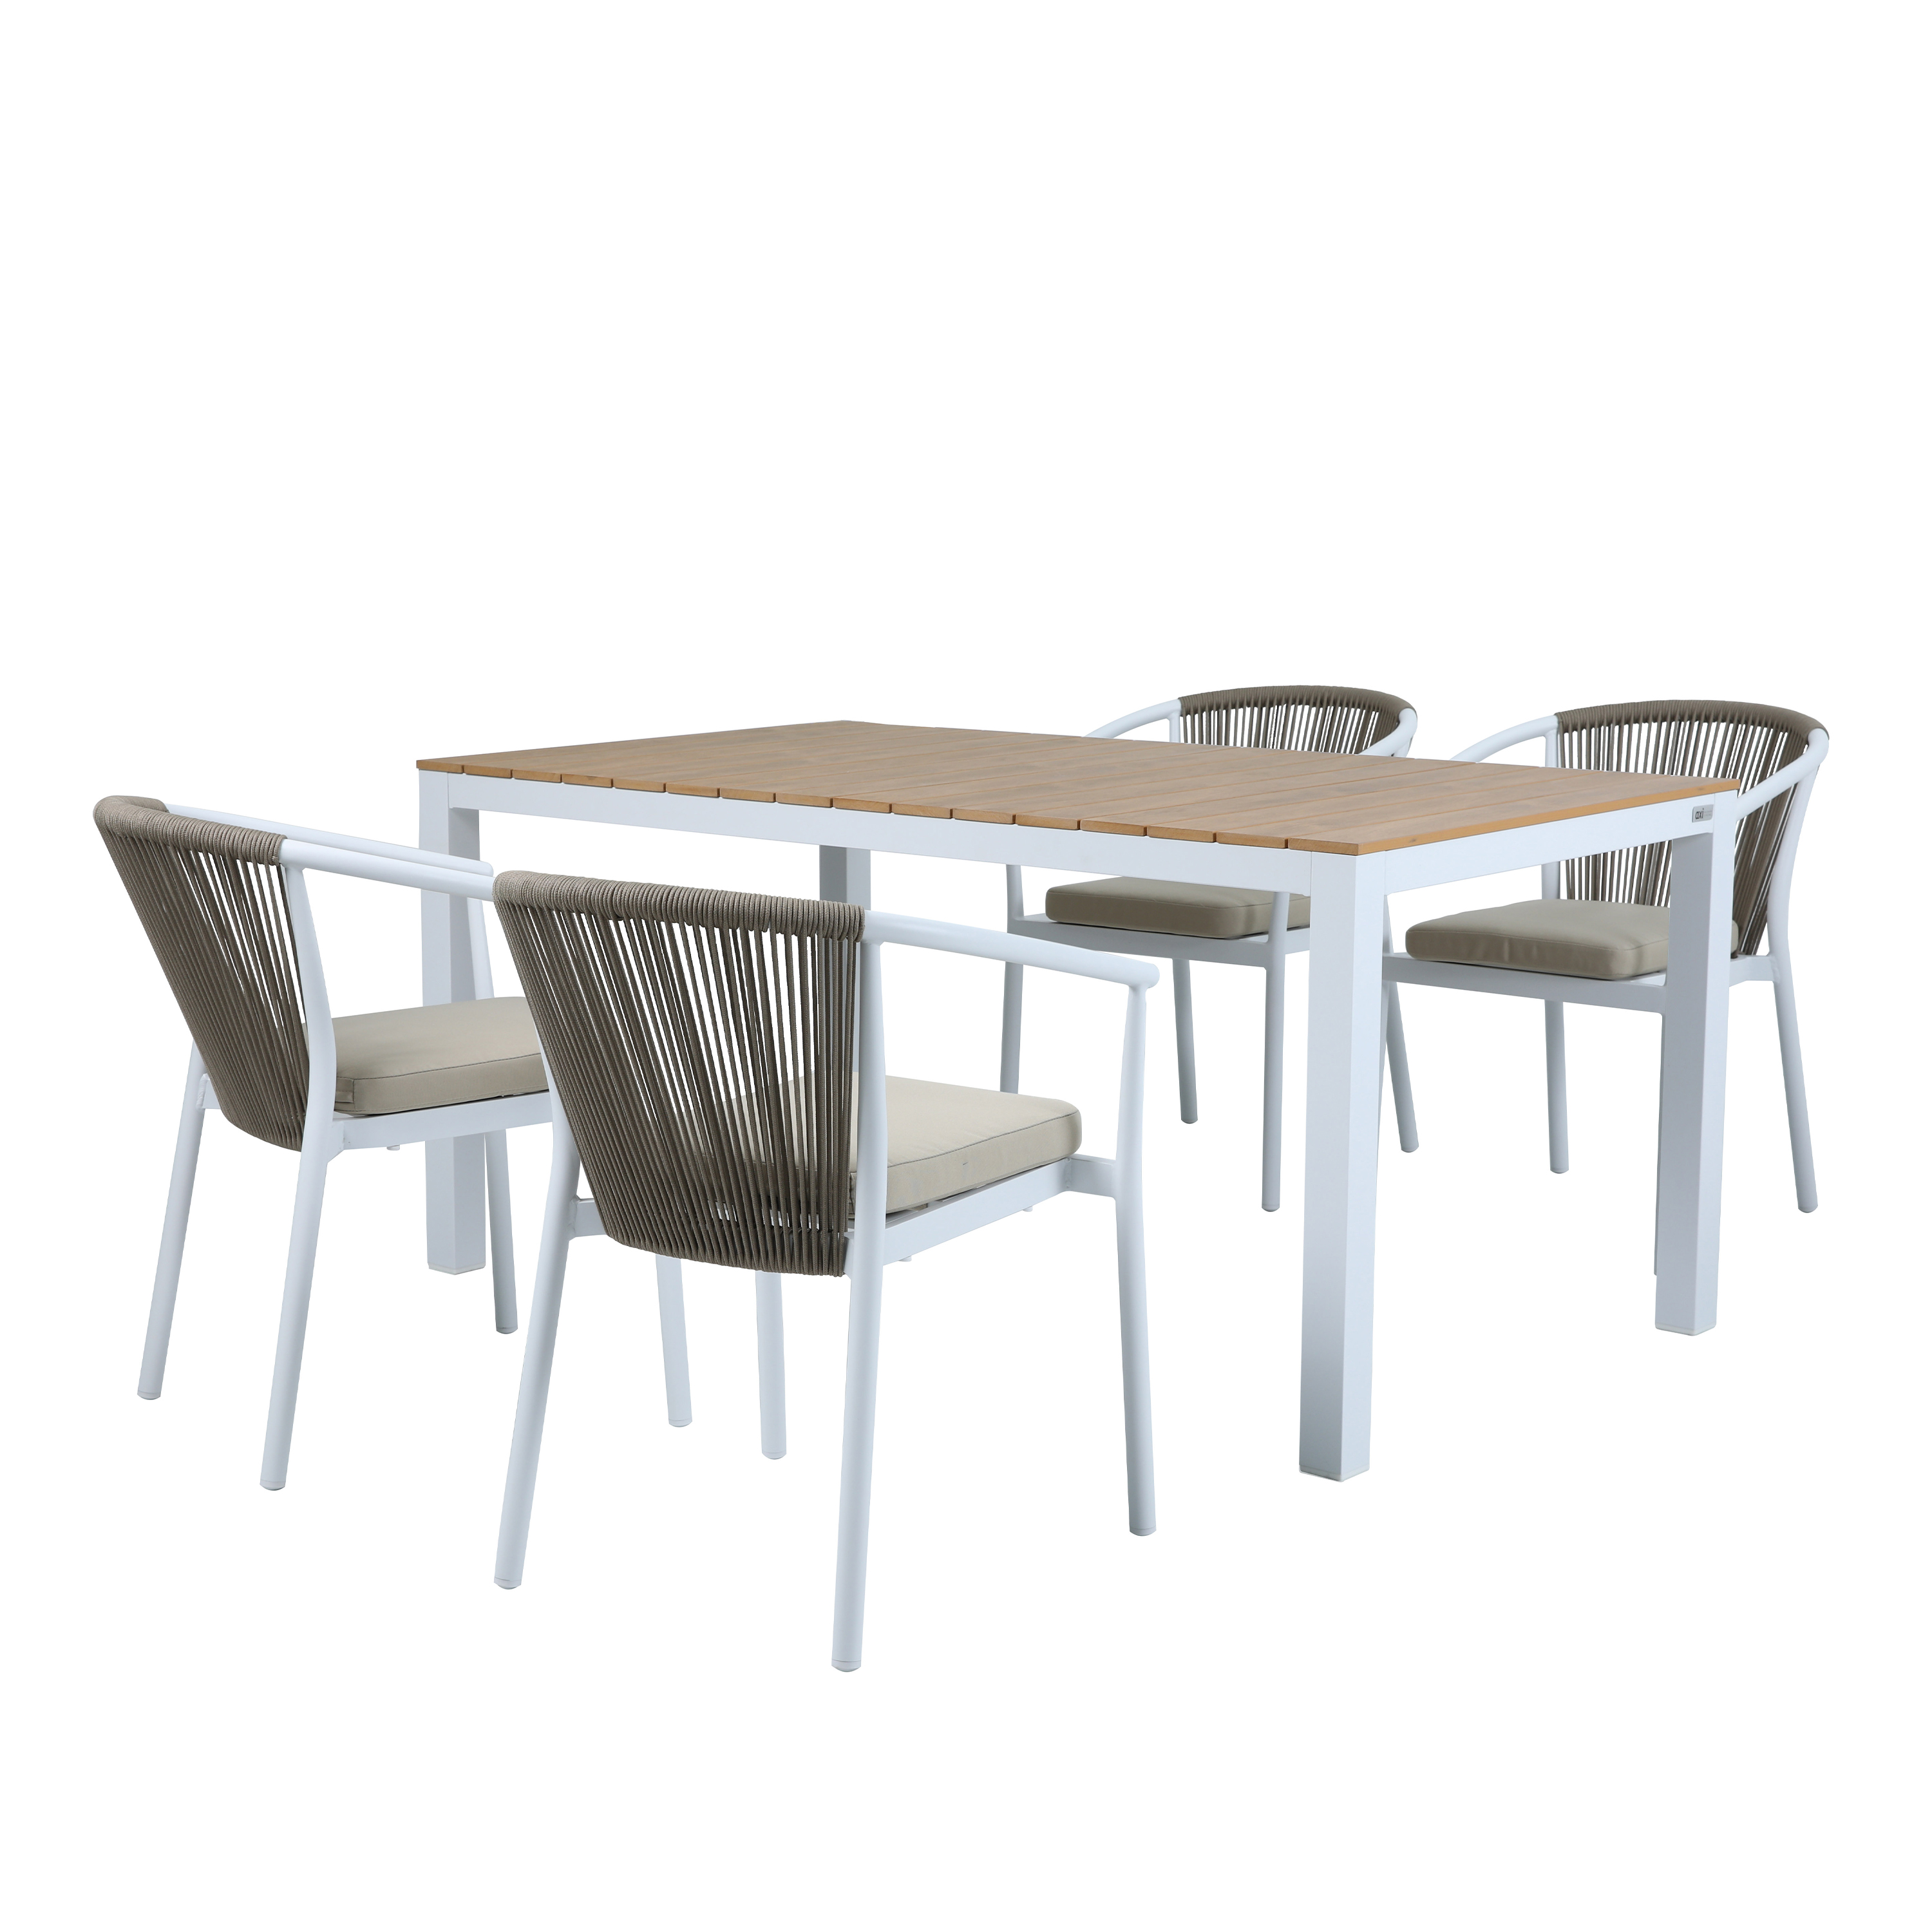 AXI Suvi Gartenset mit 4 Stühlen – Weiß mit Teak-look Polywood 